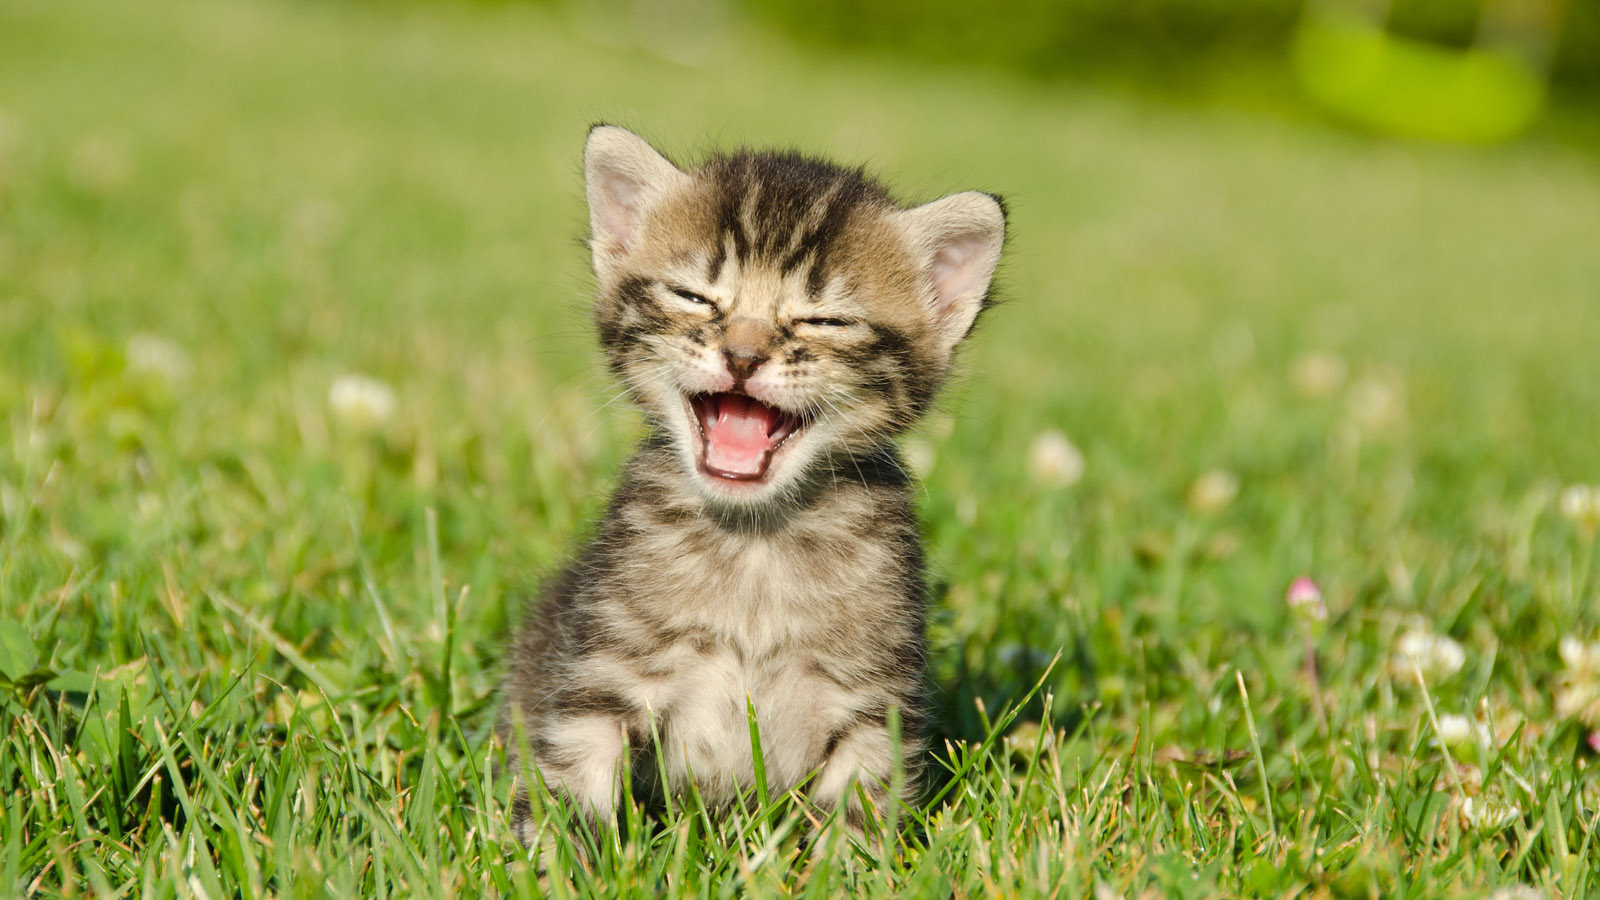 Grass kitten desktop background